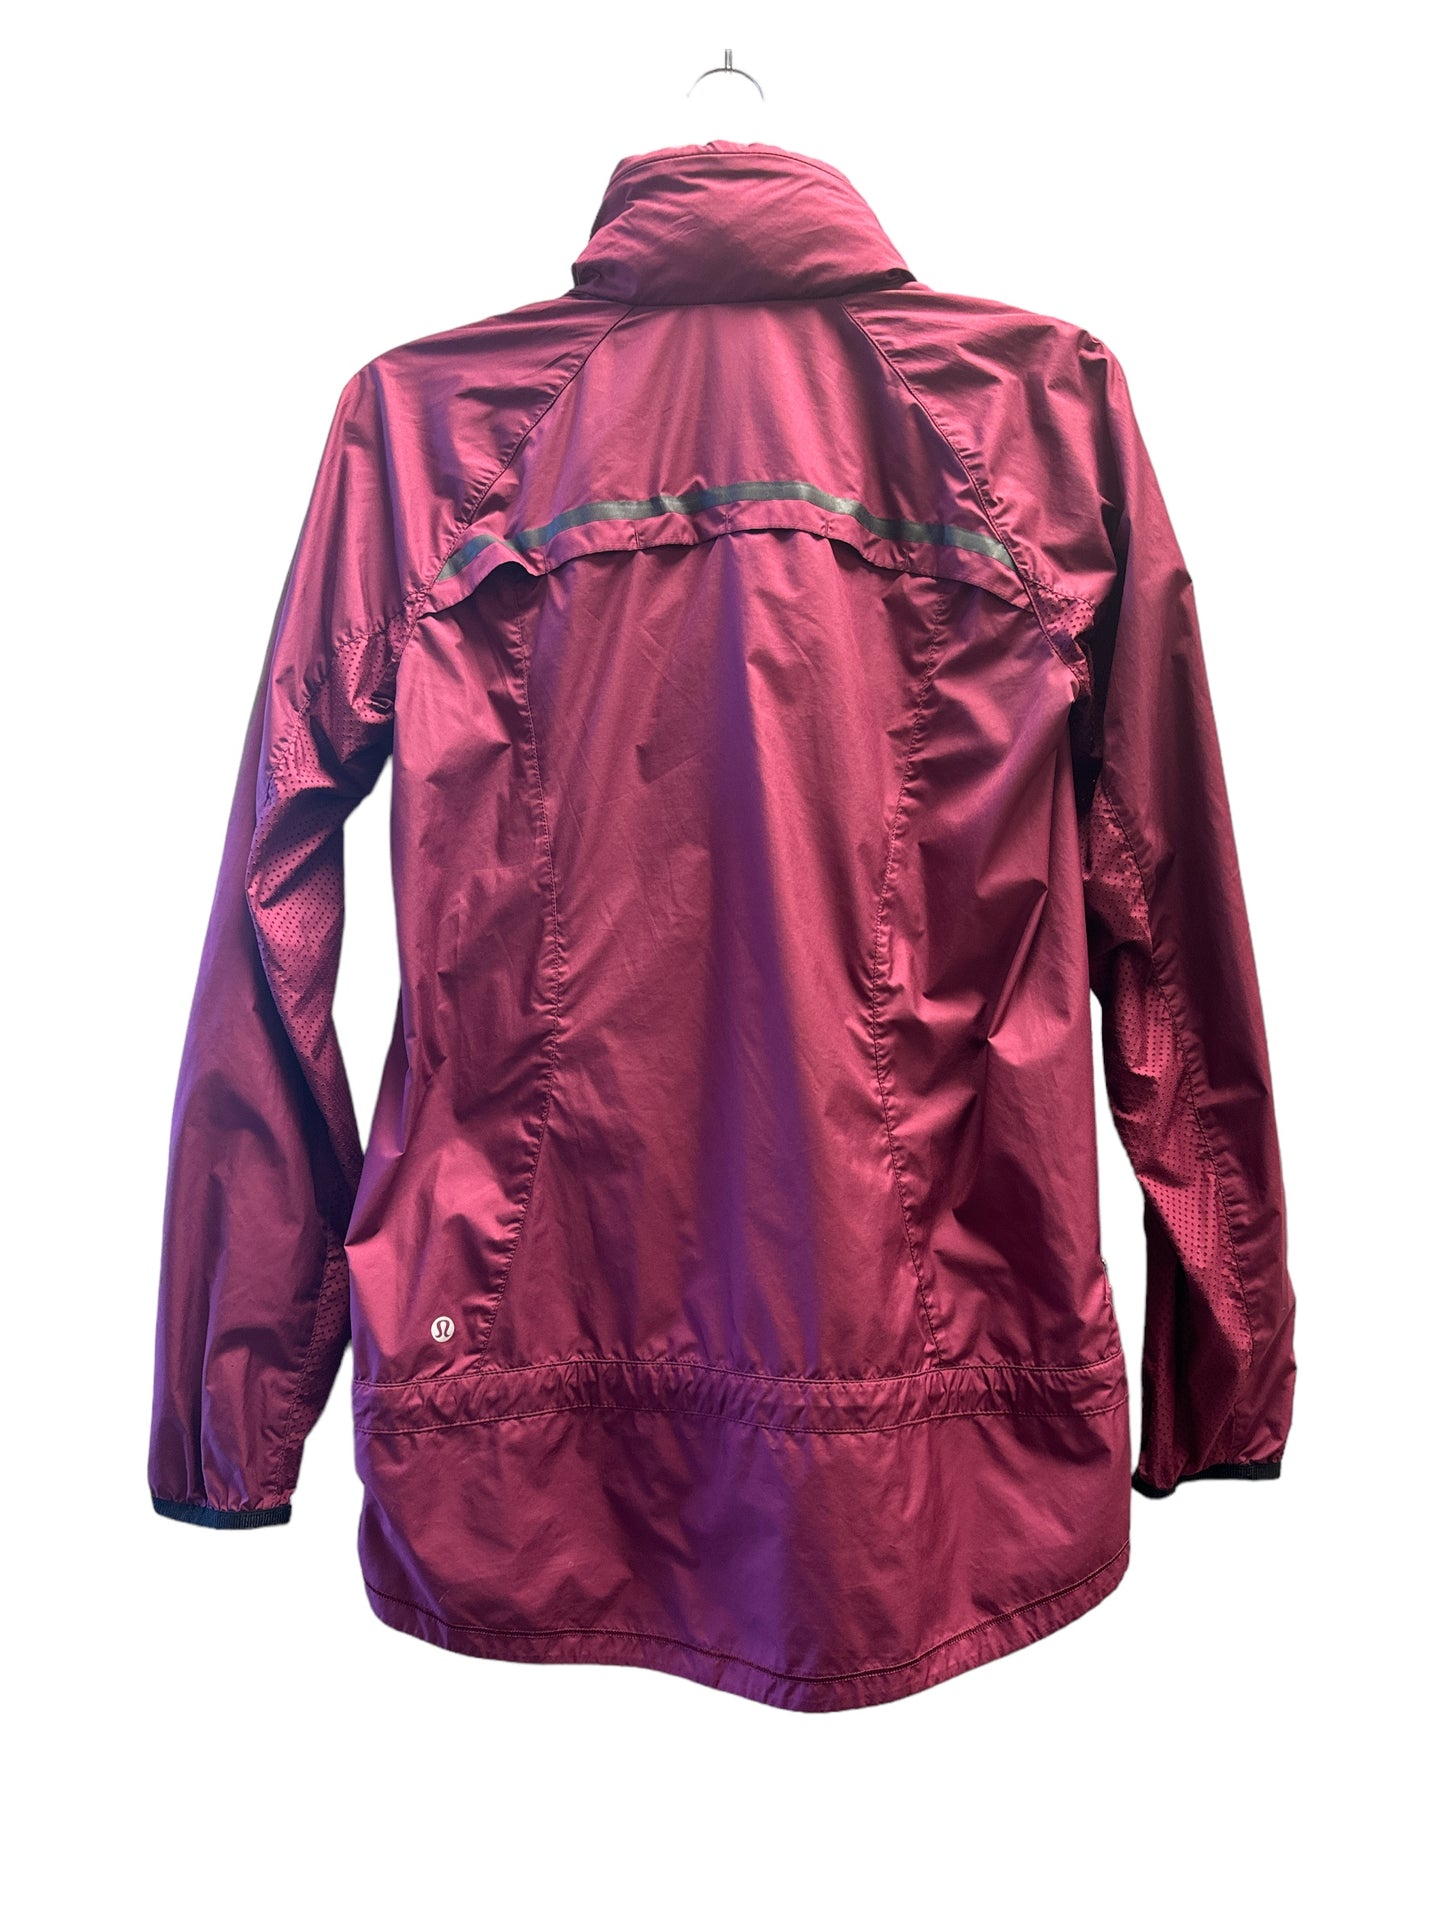 Athletic Jacket By Lululemon  Size: S